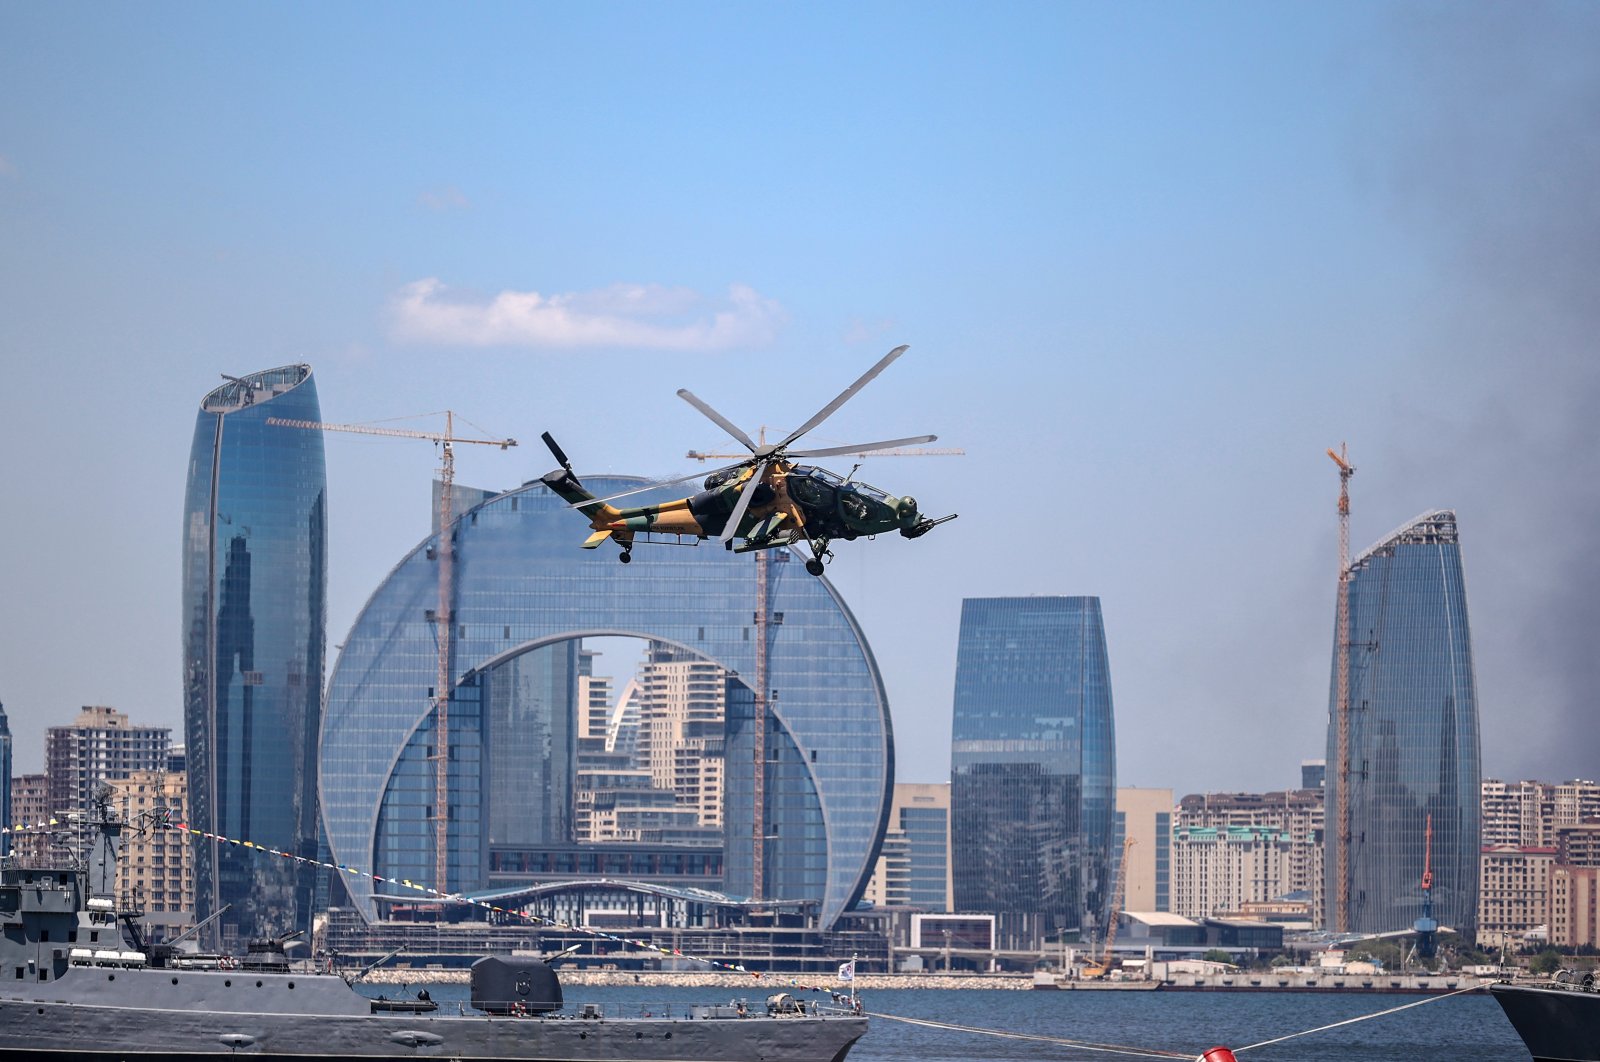 Helikopter serang buatan Turki, jet tempur dipamerkan di pameran udara Inggris